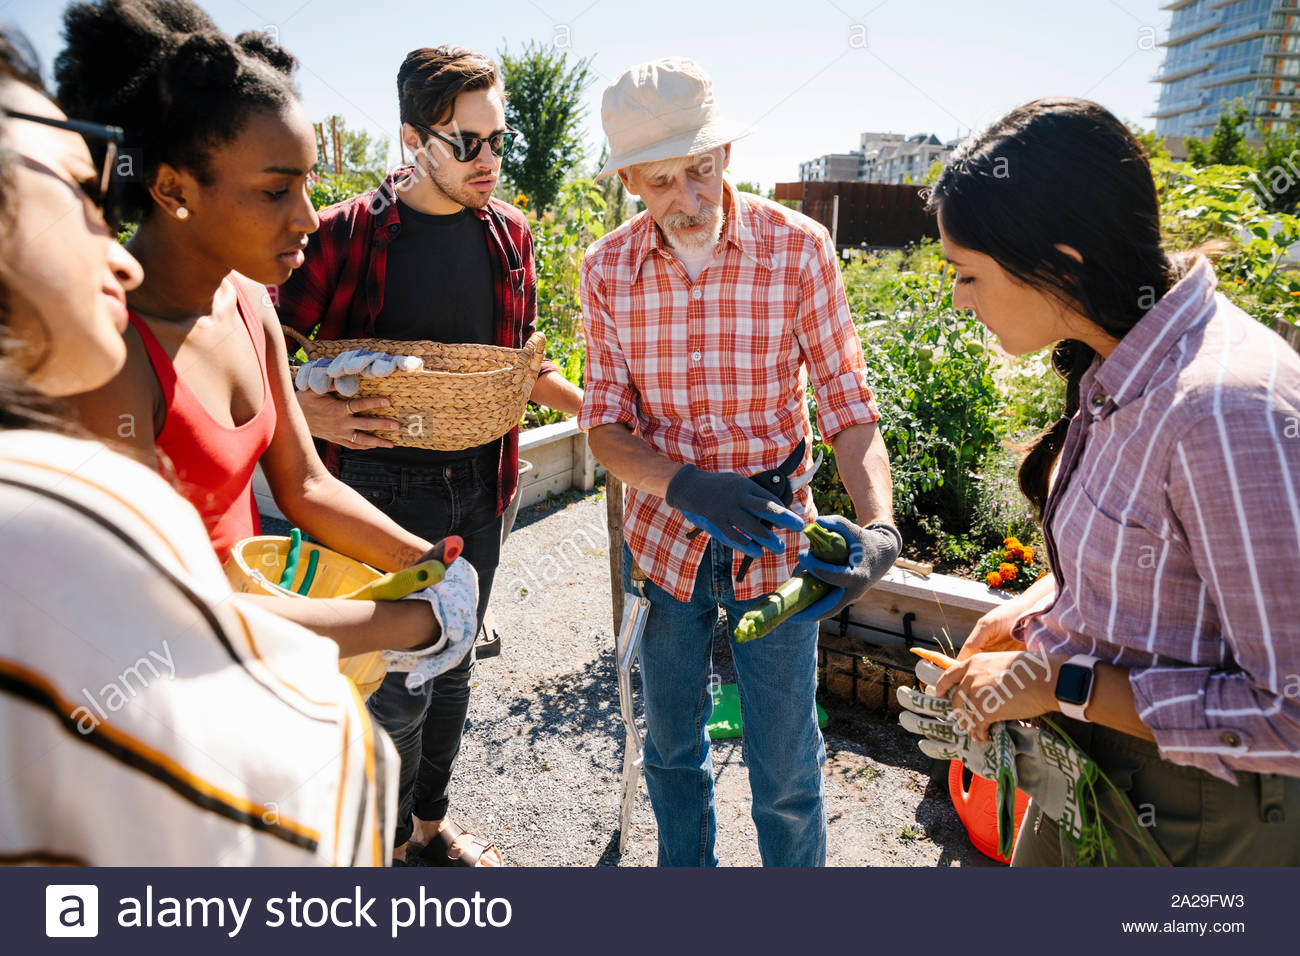 Man Unterricht im Garten arbeiten junge Erwachsene in sonniger, städtischen Gemeinschaft garten Stockfoto